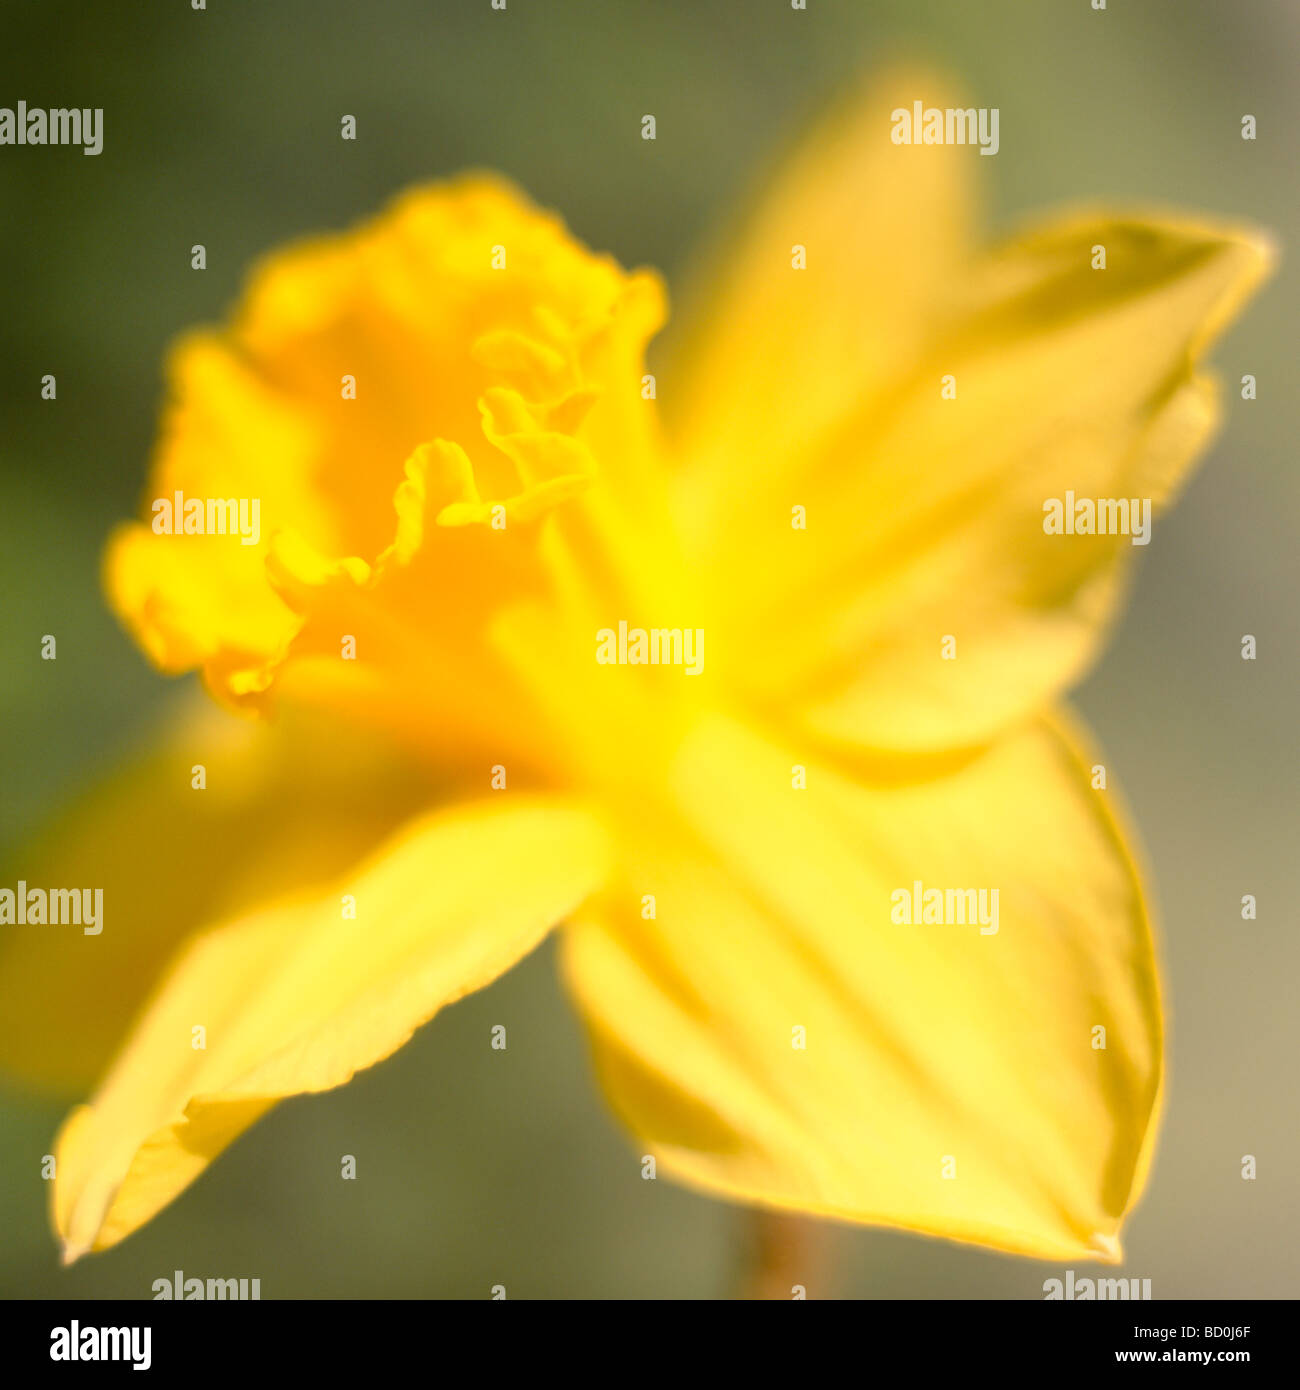 schönen Frühling Narzisse der Inbegriff des Frühlings Kunstfotografie Jane Ann Butler Fotografie JABP287 Stockfoto